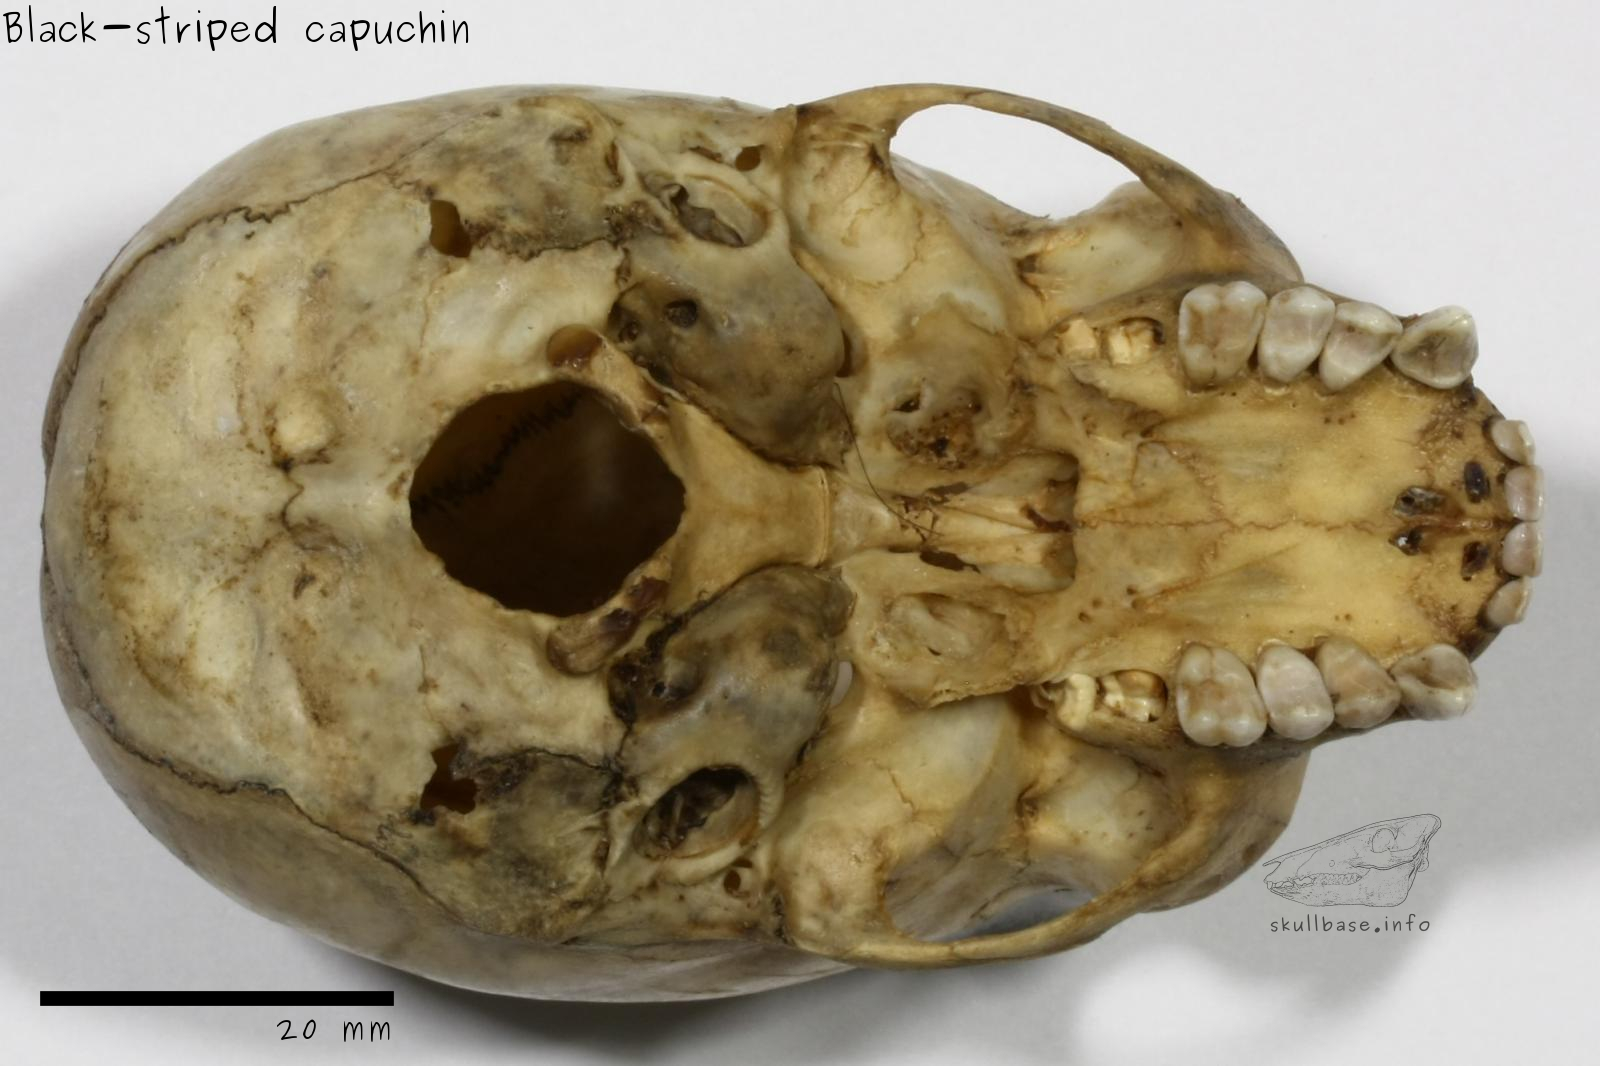 Black-striped capuchin (Sapajus libidinosus) skull ventral view